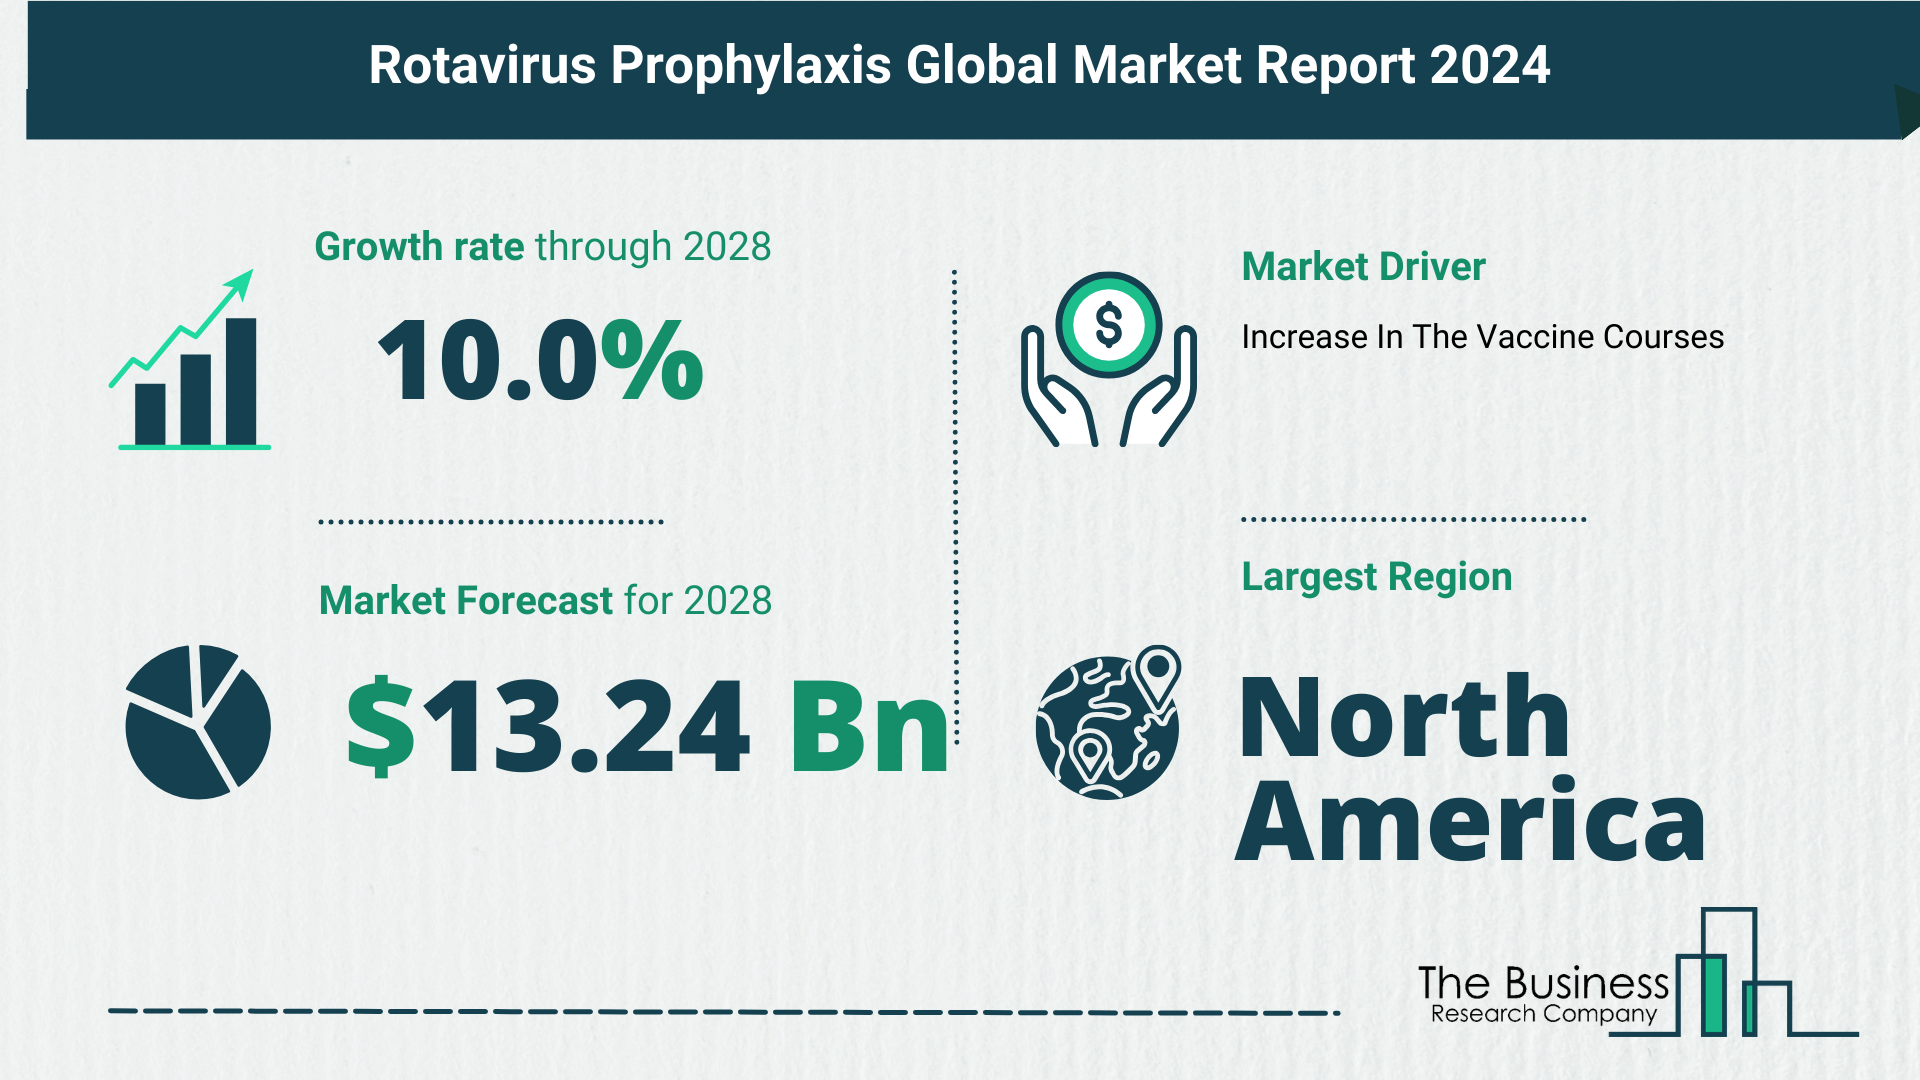 Global Rotavirus Prophylaxis Market